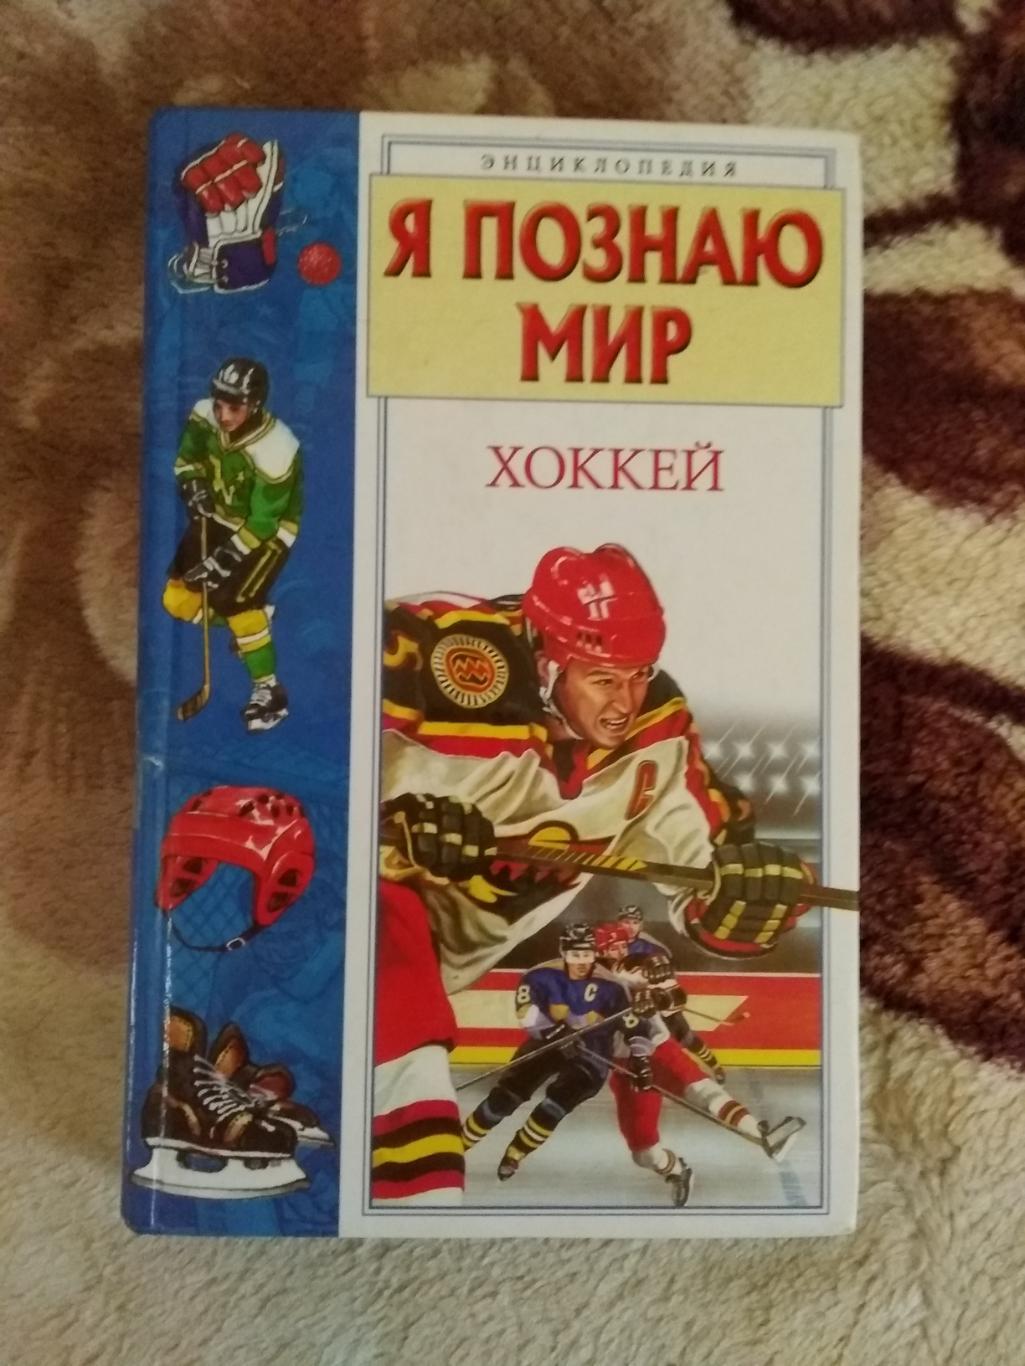 А.Краснобельмов.Я познаю мир:Хоккей:Детская энциклопедия.Москва 2003.